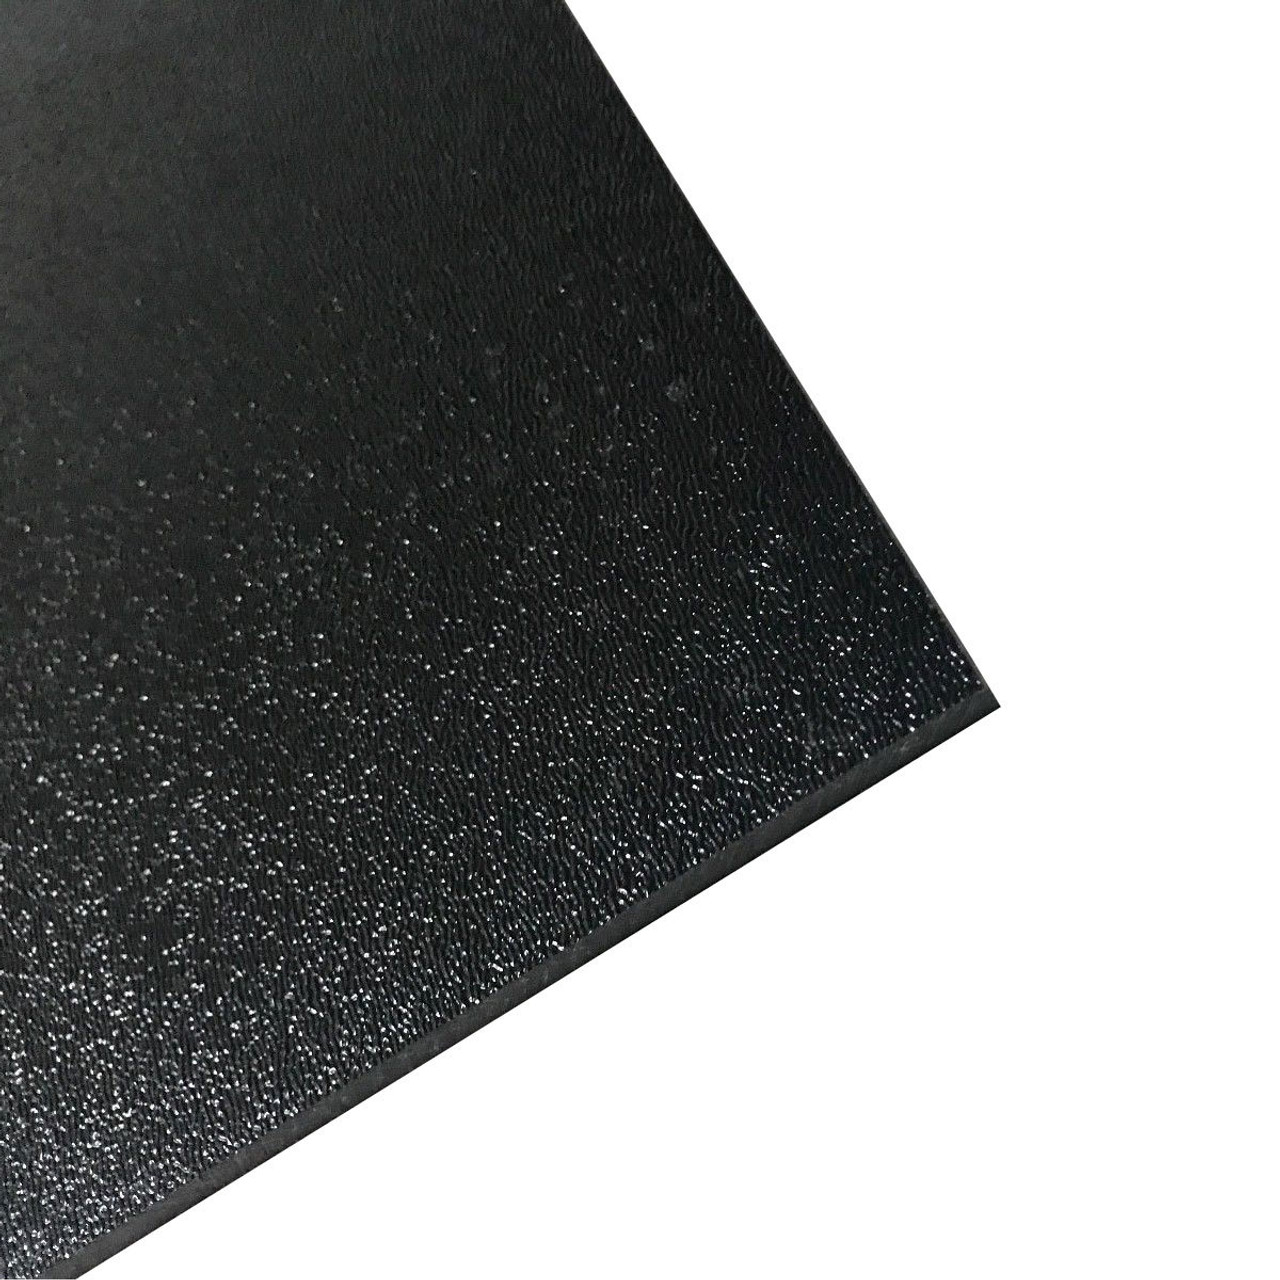  Frienda 10 Pcs Black ABS Plastic Sheet 12 x 12 1/8